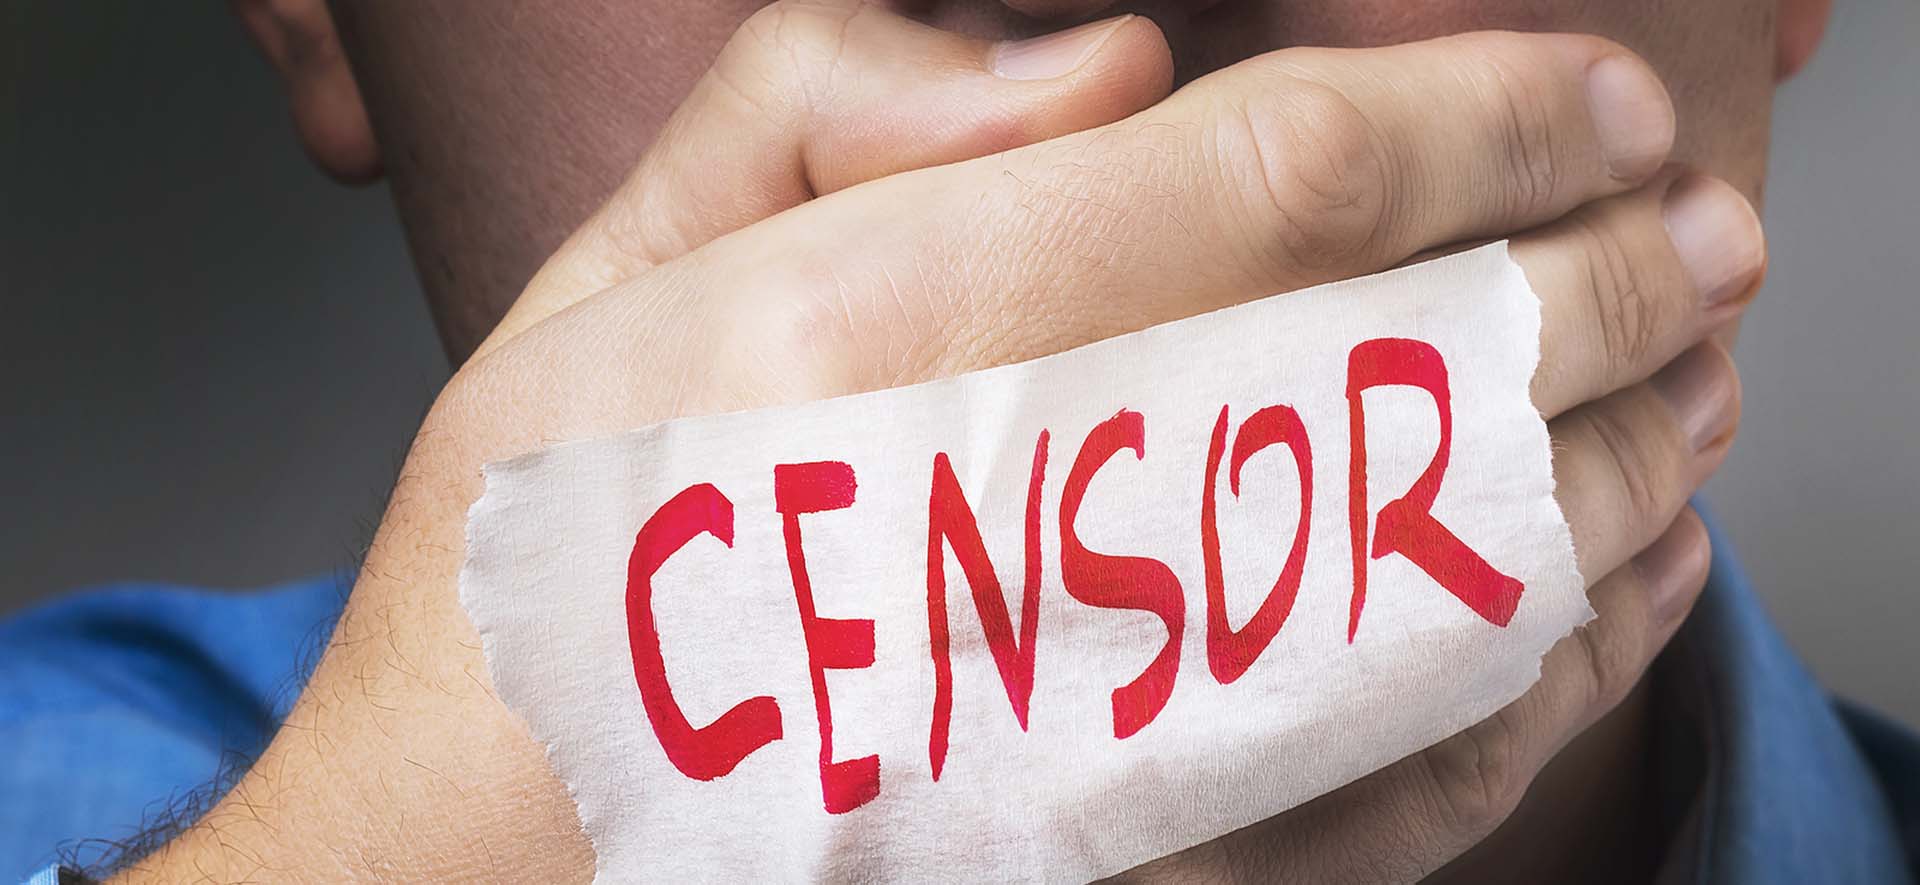 Según una encuesta, los estudiantes británicos se sienten censurados en los campus​